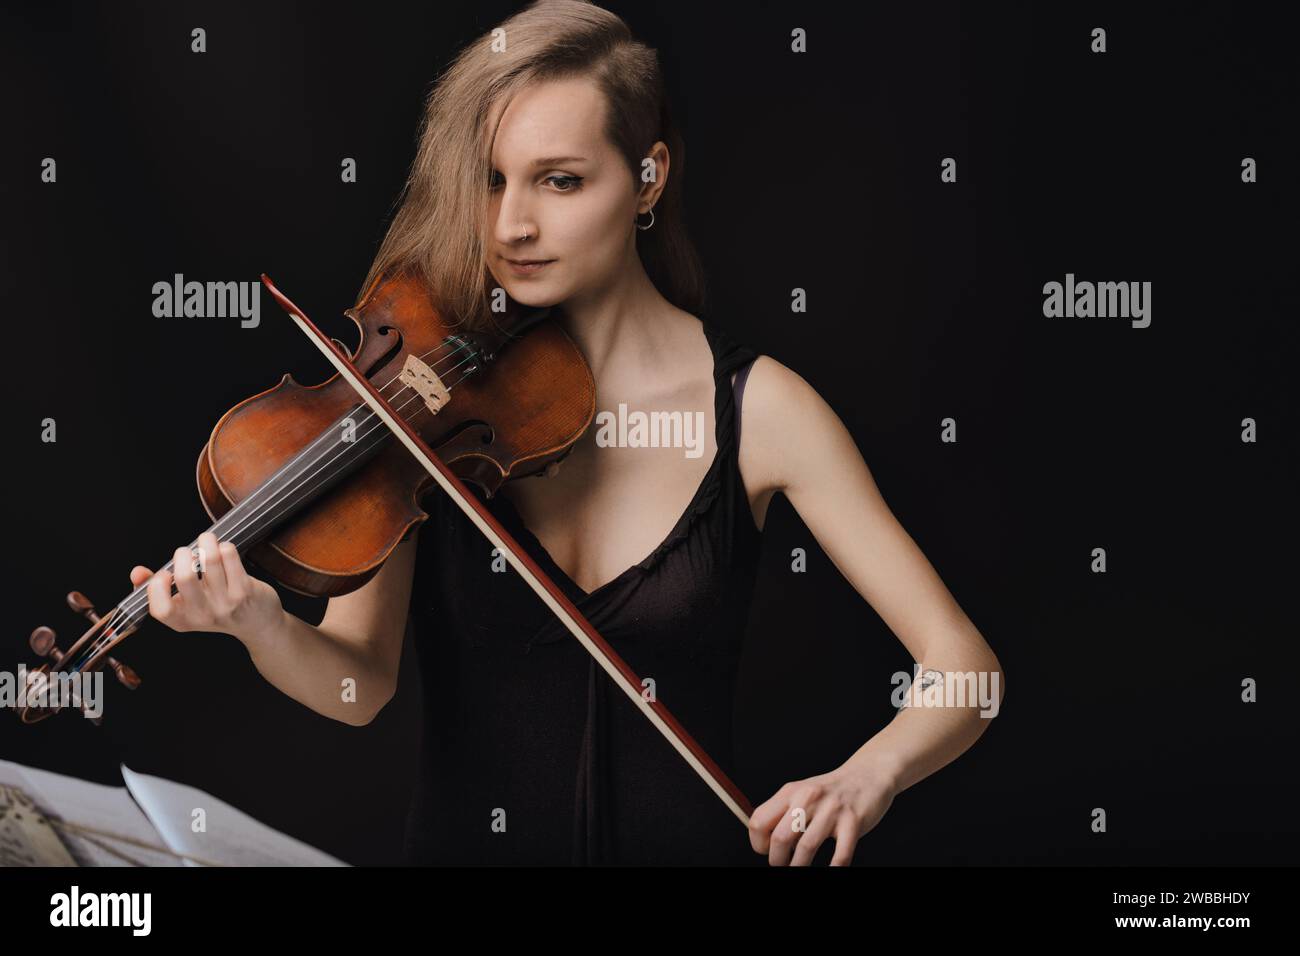 Intimité avec la musique représentée à travers l'étreinte tendre du violon, capturant l'essence de la performance Banque D'Images